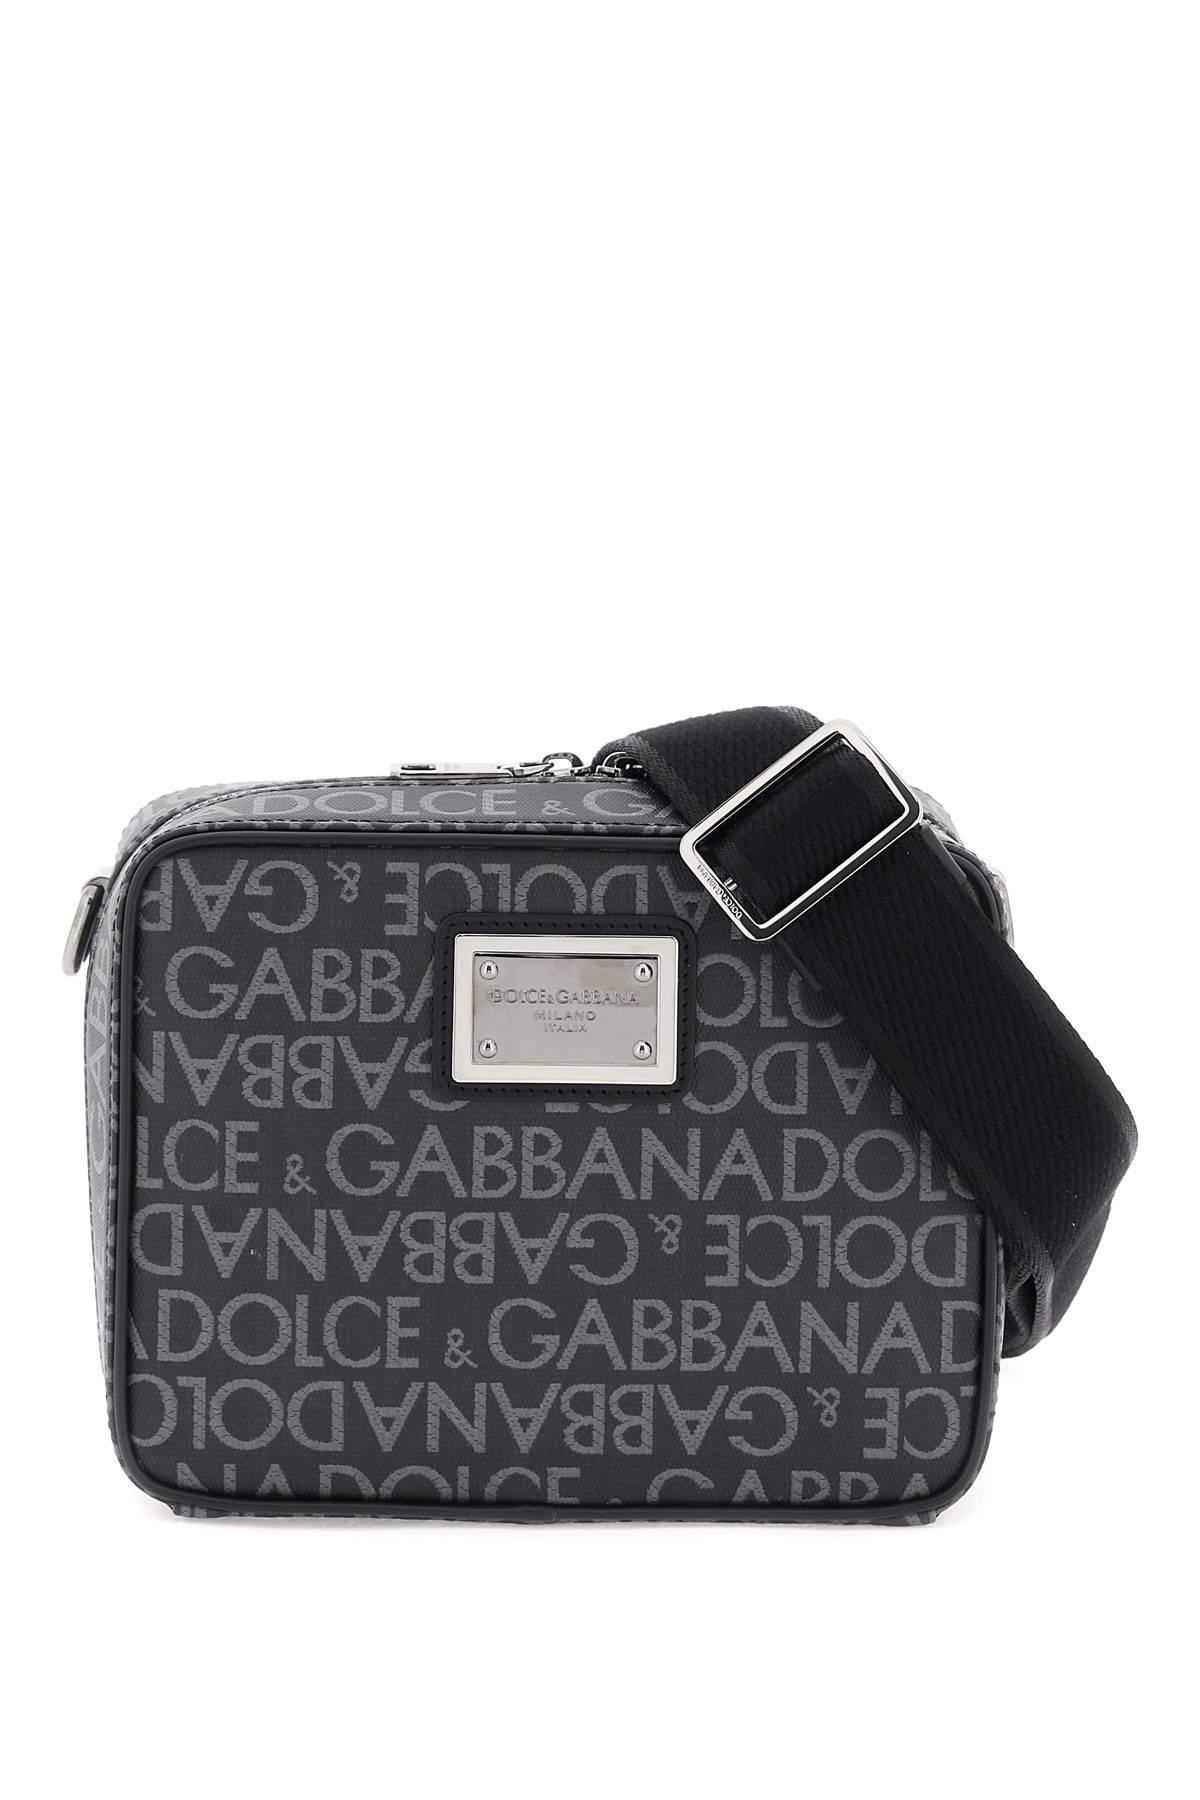 Dolce & Gabbana DOLCE & GABBANA coated jacquard messenger bag